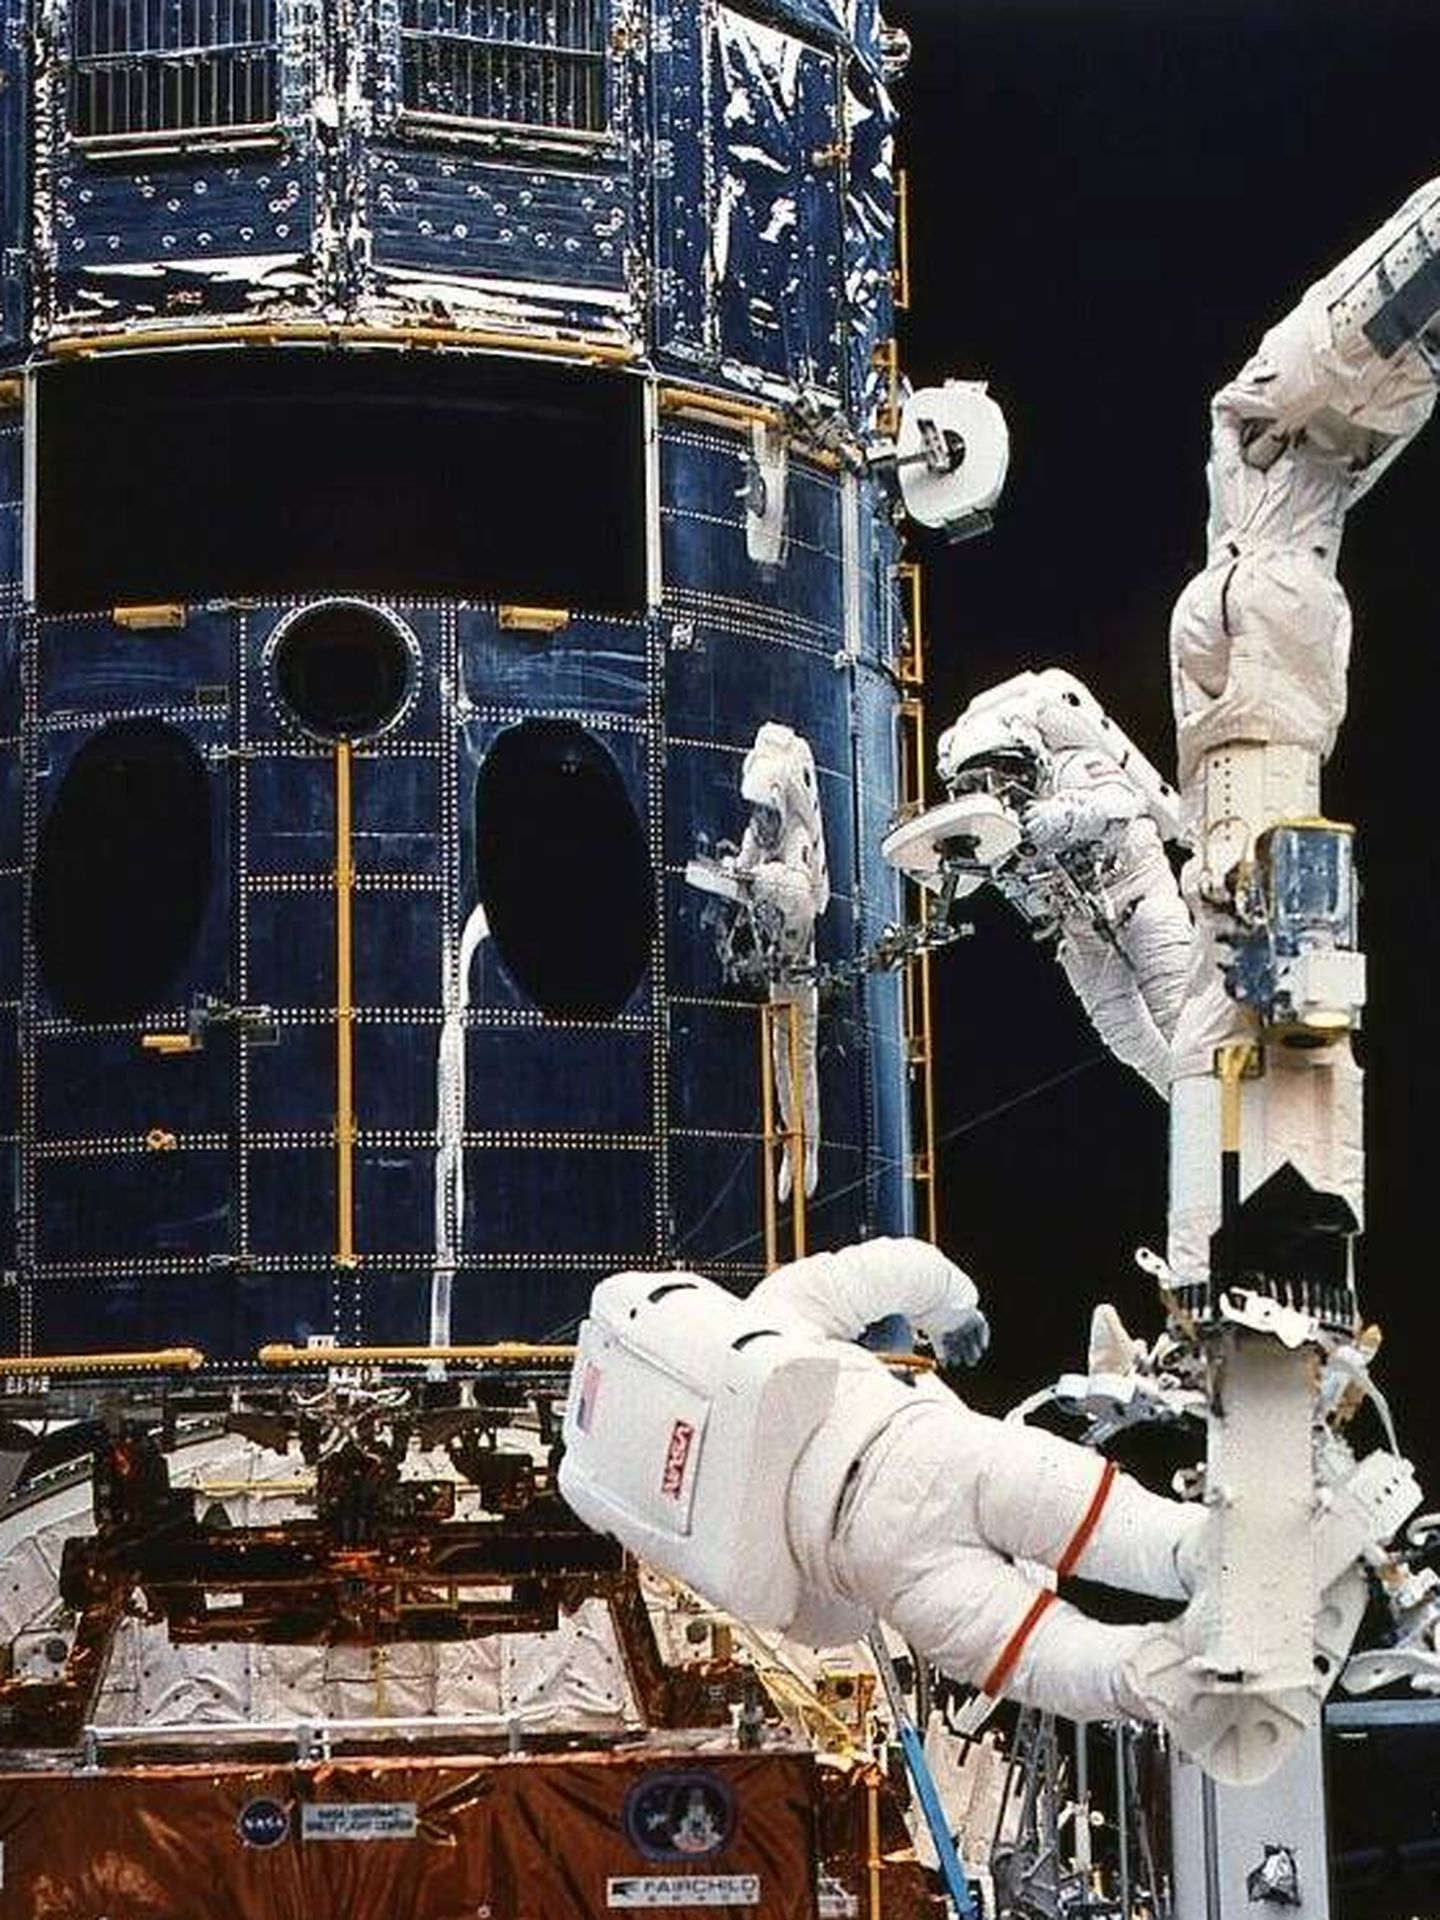 El astronauta Jeffrey Hoffman se prepara para instalar la nueva cámara planetaria del Hubble mientras Story Musgrave le asiste durante la misión STS-61 del Endeavour en 1993. (NASA)